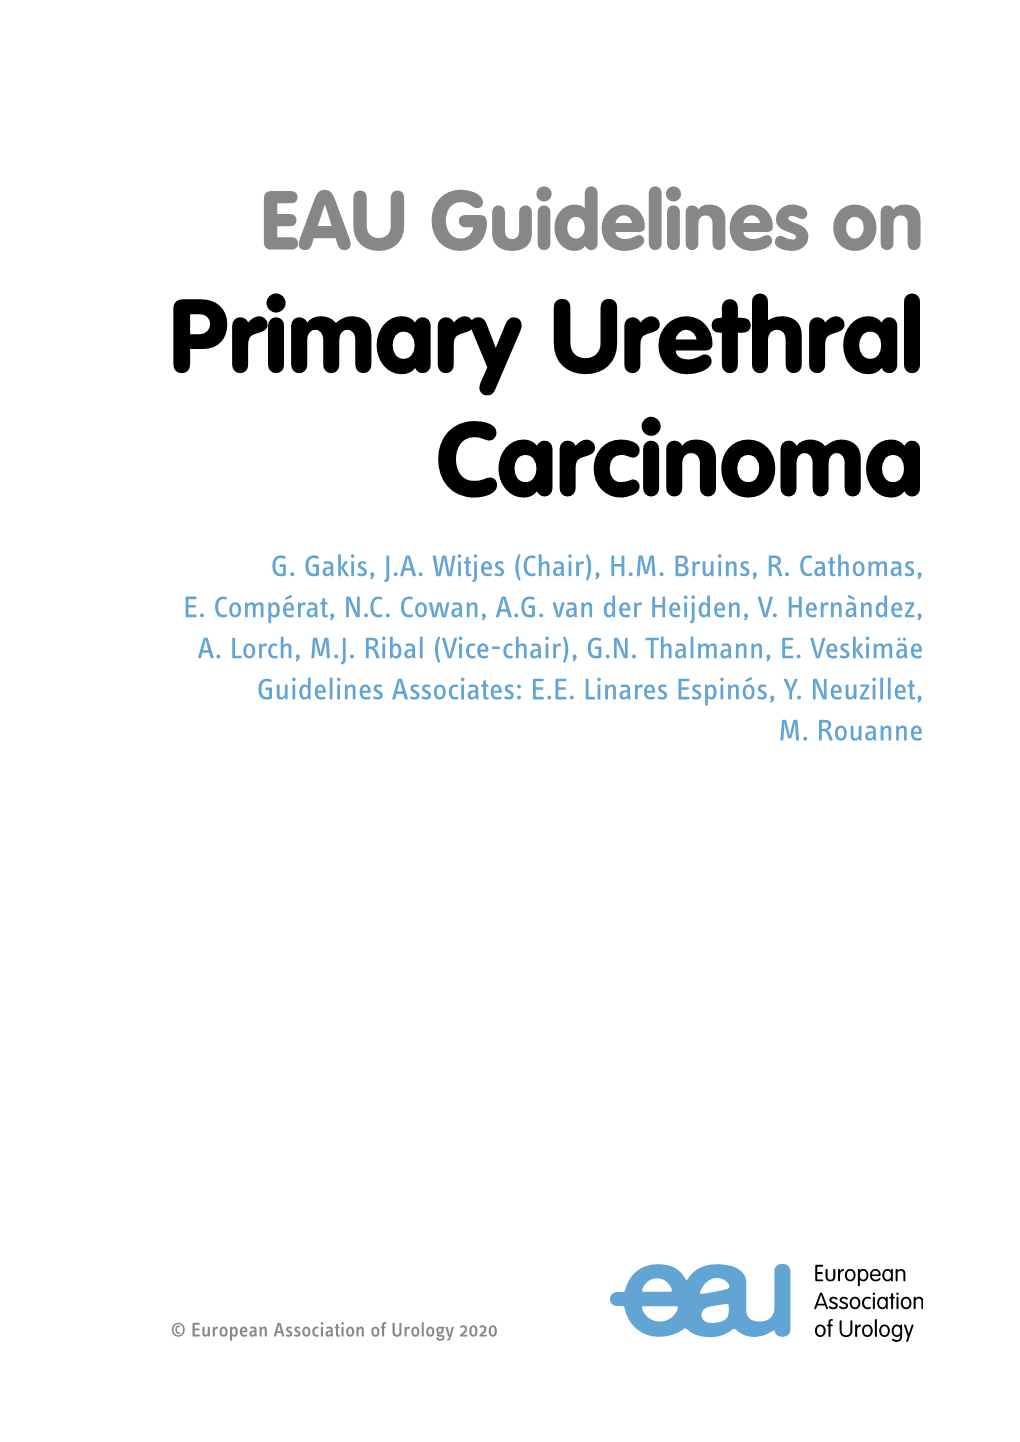 Primary Urethral Carcinoma